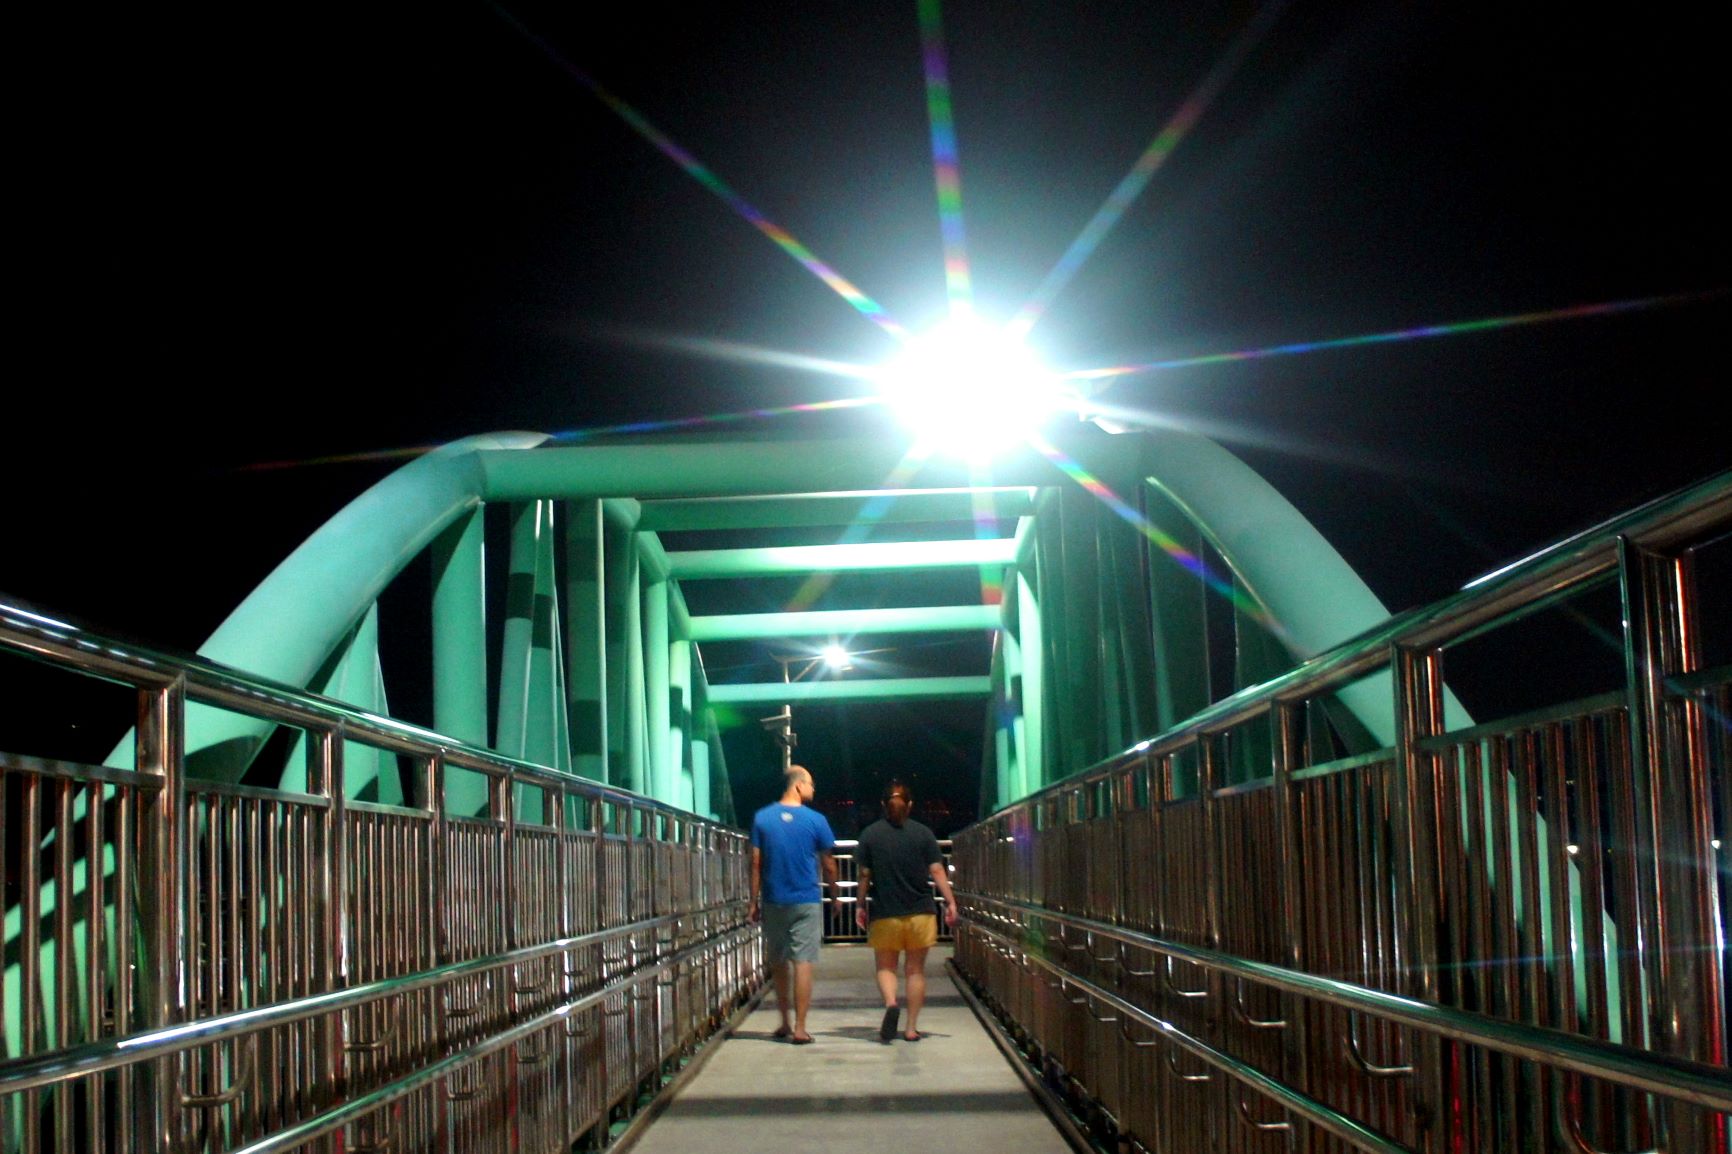 擺接堡陸橋增設無障礙坡道夜間照明，夜間活動好悠閒